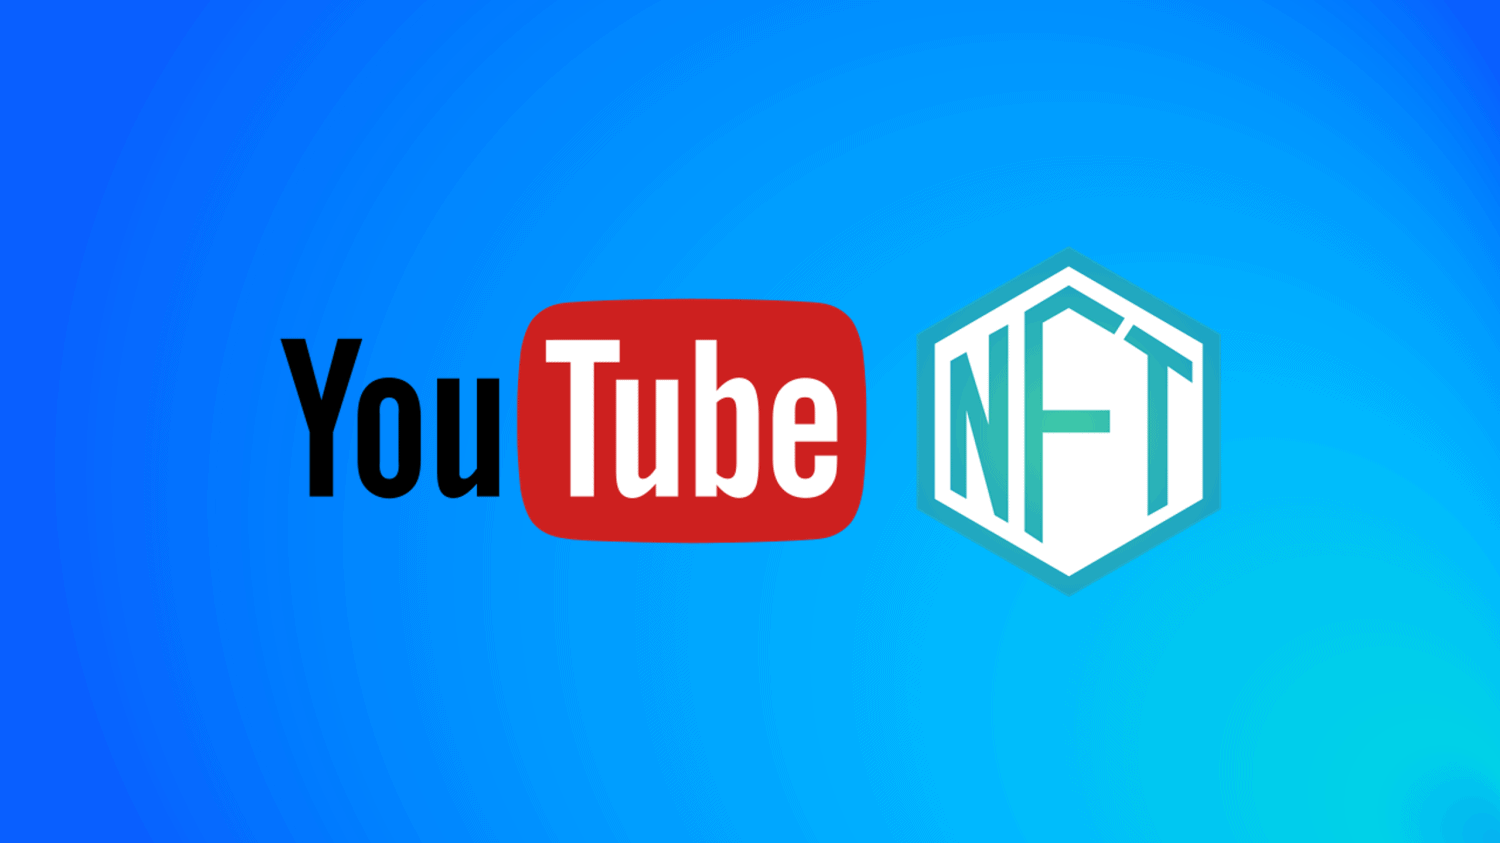 Youtube NFT